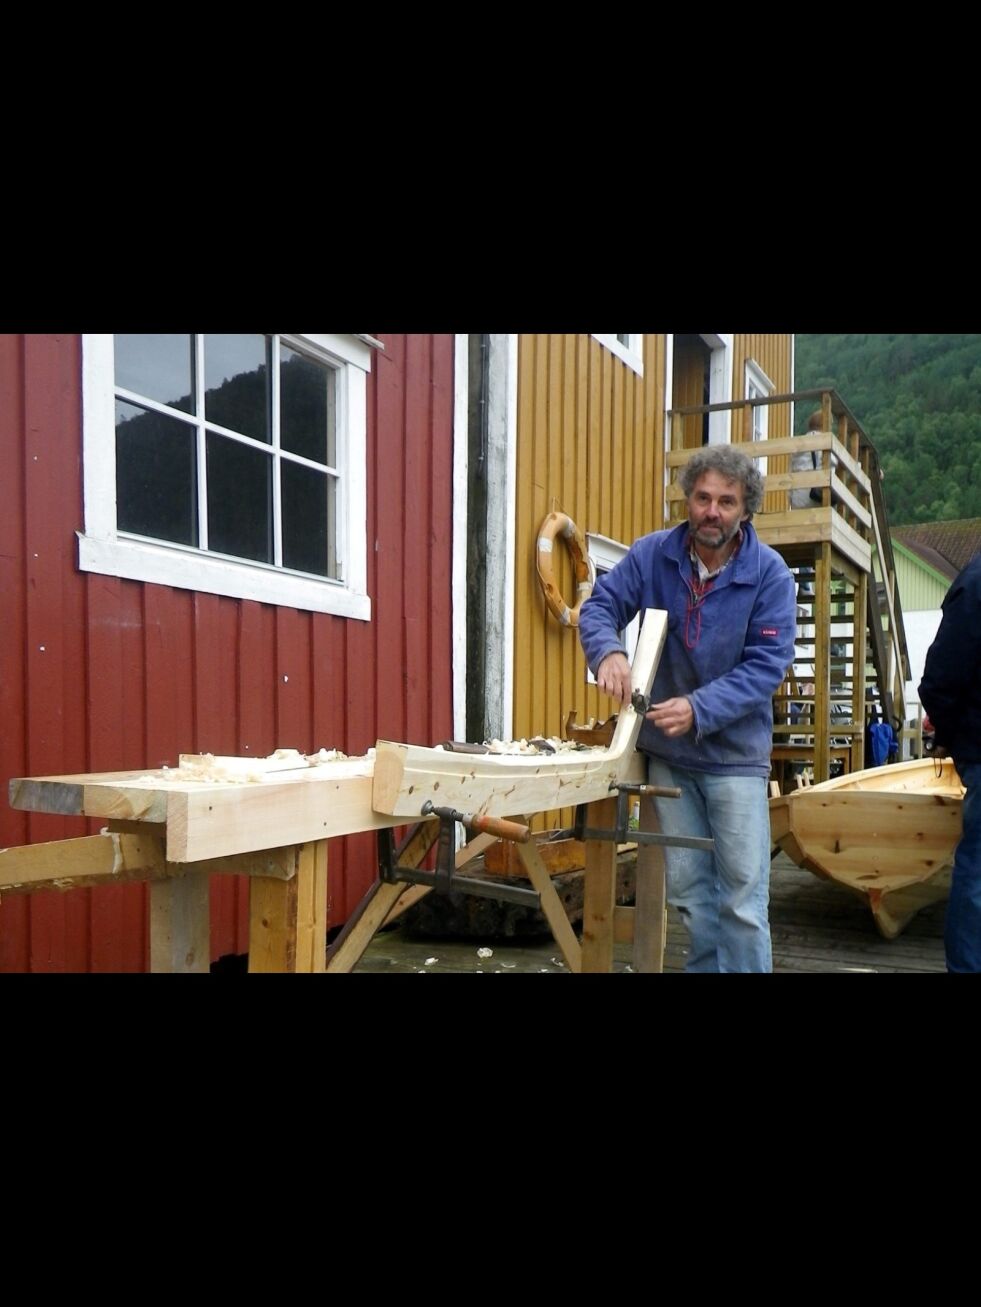 HÅNDVERK. Kai Linde bygger tre båter til Rognan ungdomsskole. Her er han i gang med å høvle materialet. Alle foto: Utlånt av Kai Linde